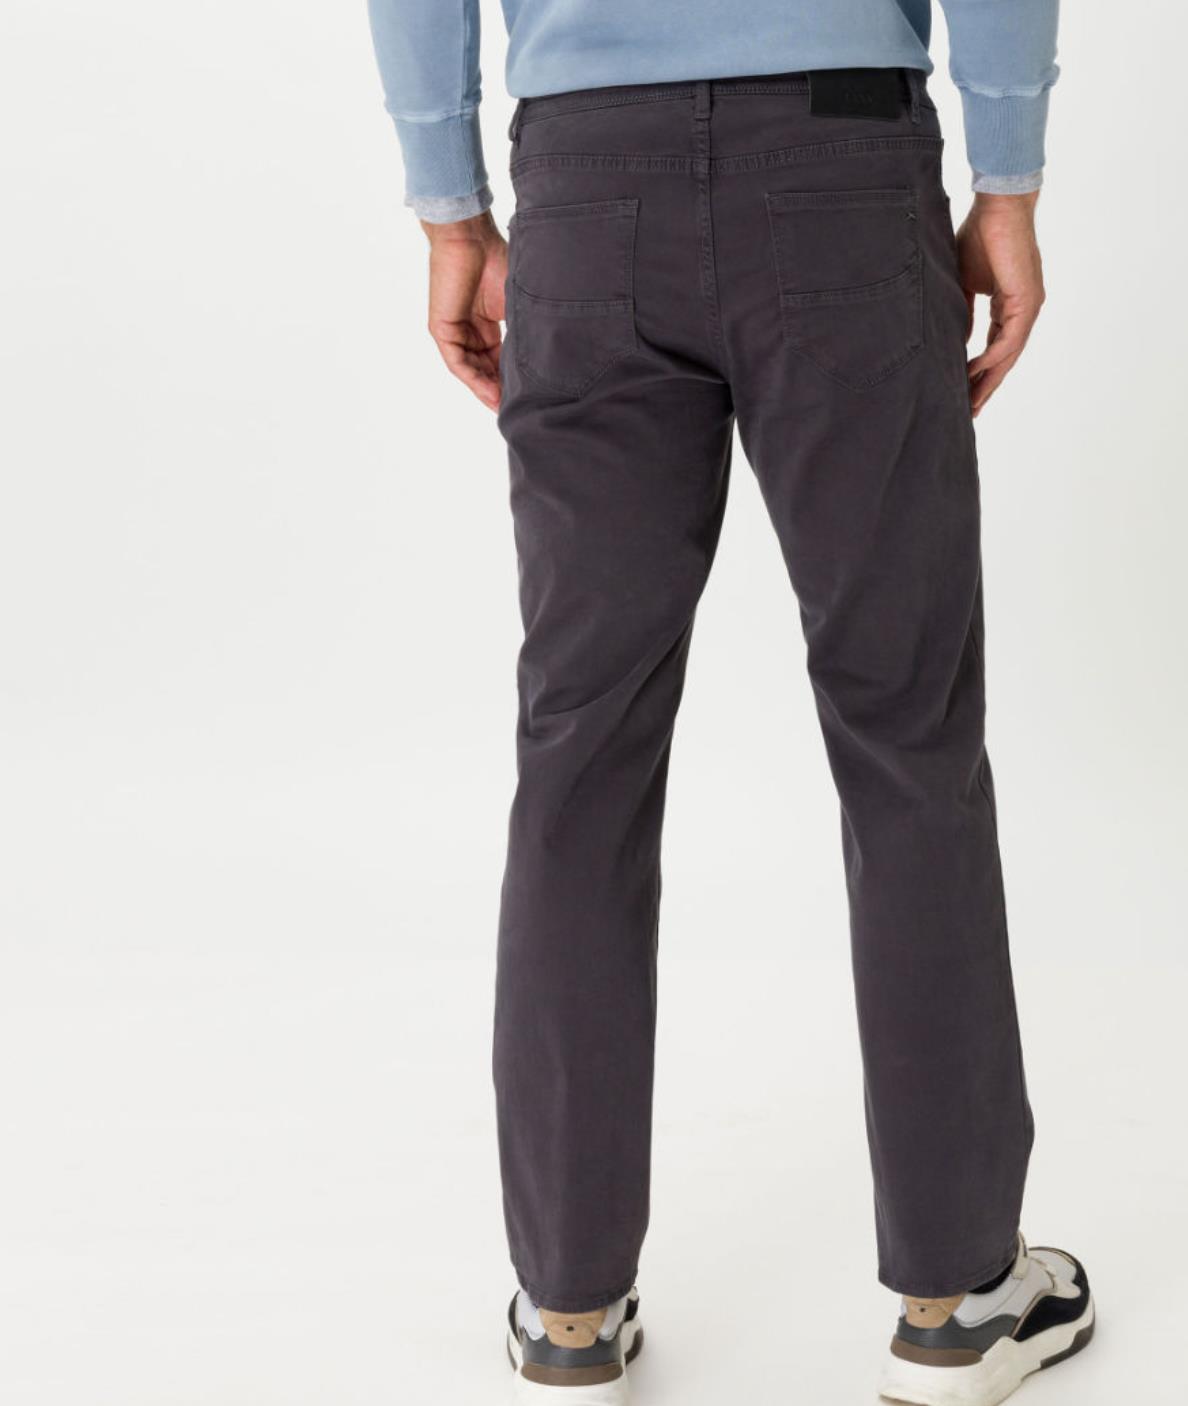 Brax bukse modell Cadiz i mørk grå bakfra